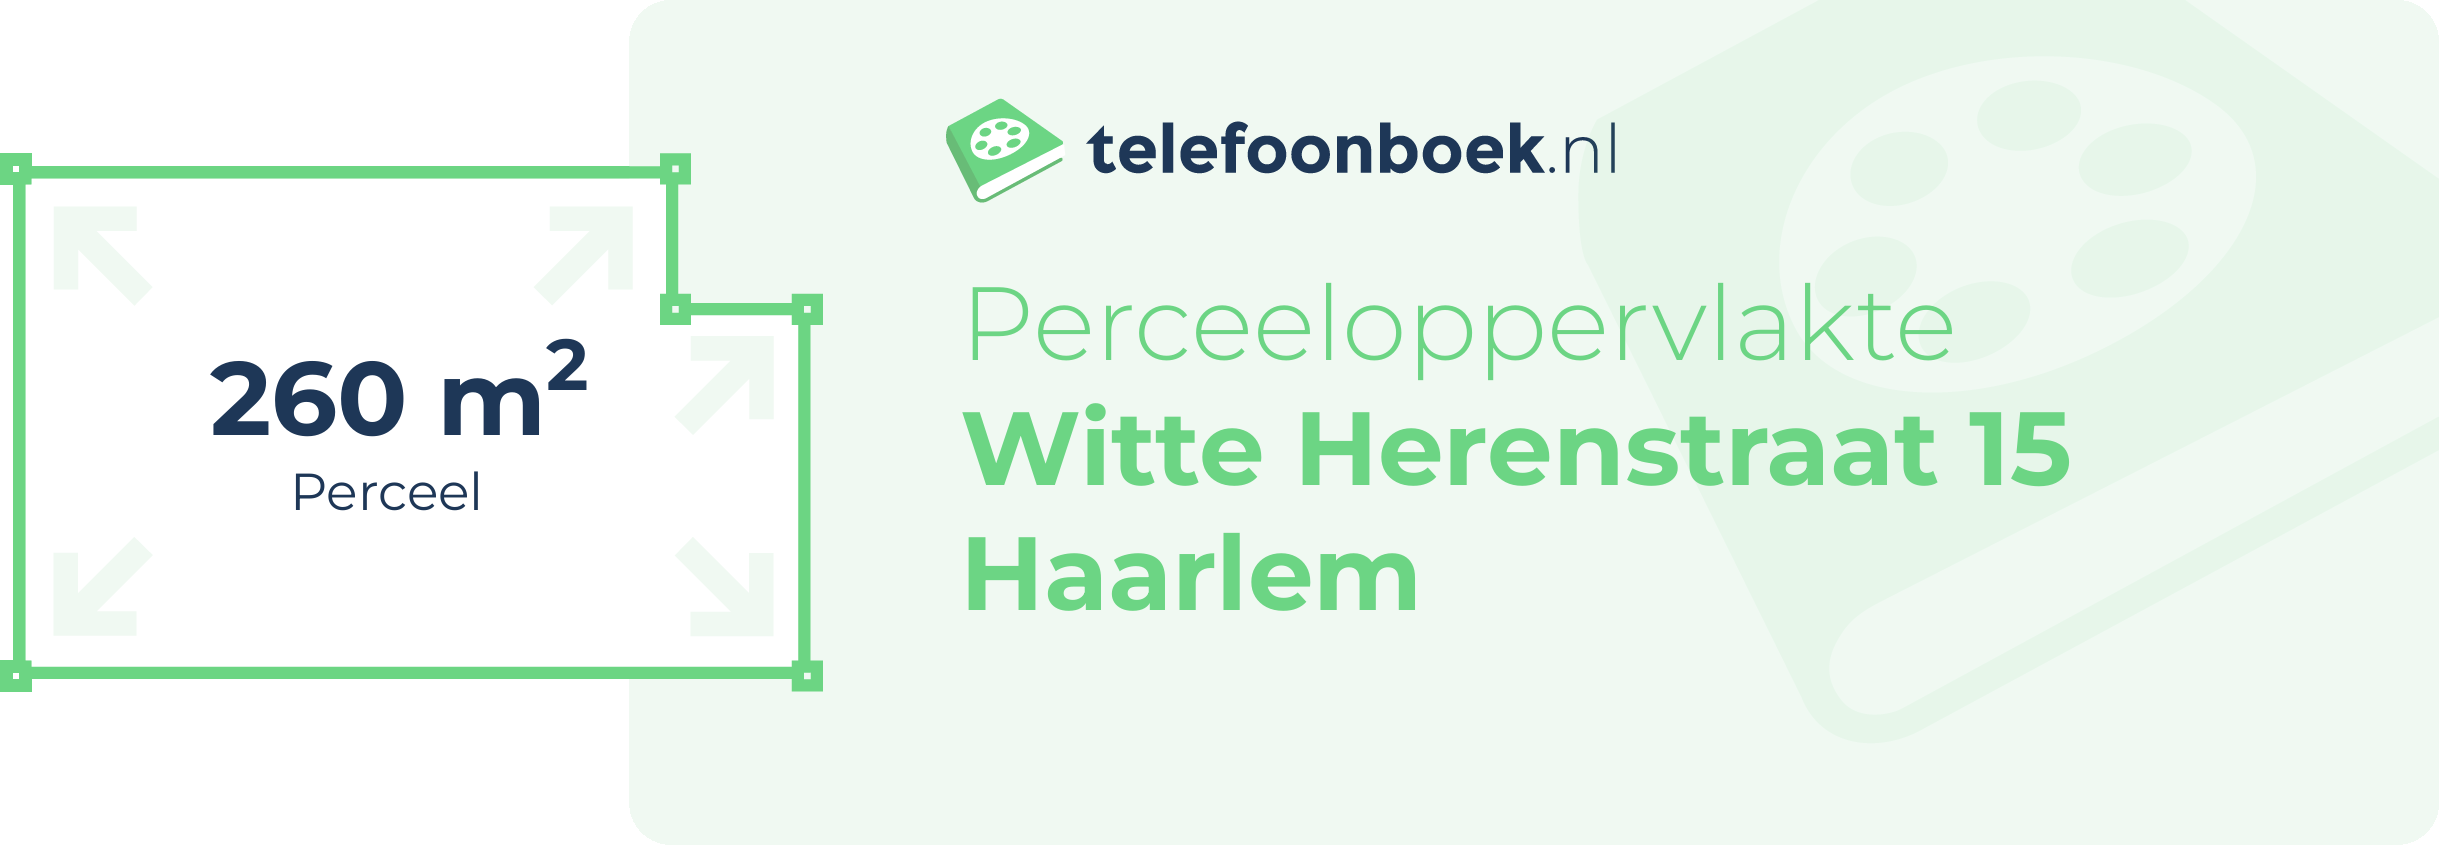 Perceeloppervlakte Witte Herenstraat 15 Haarlem